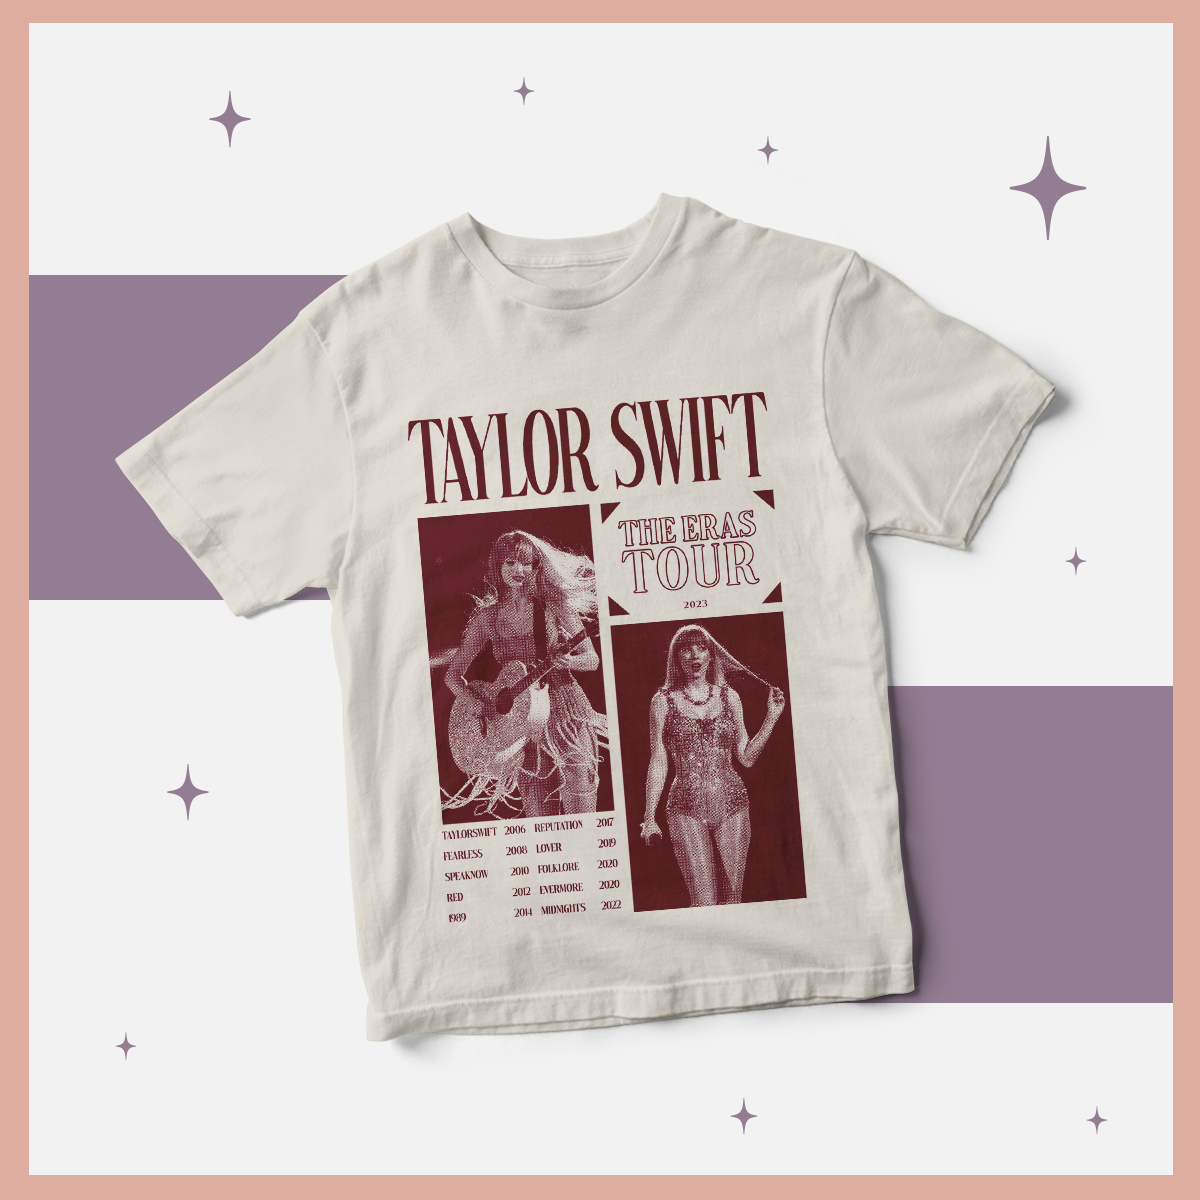 Camiseta Taylor Swift The eras tour